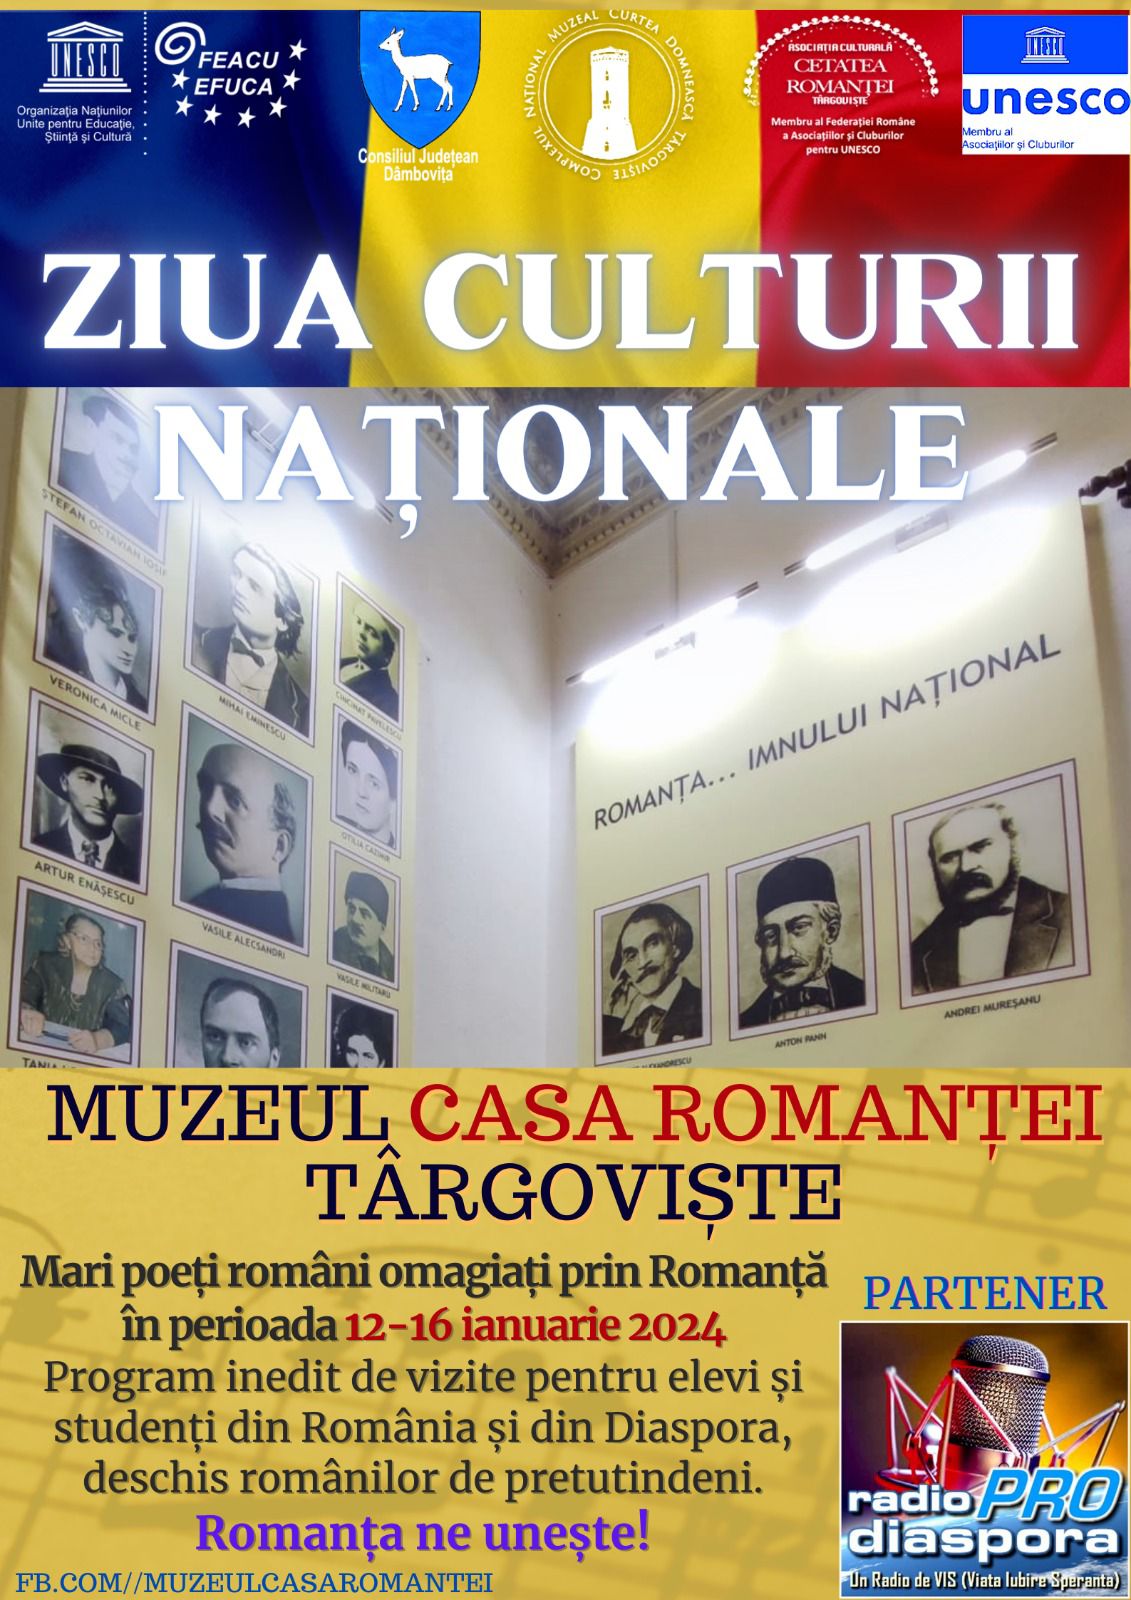 Programul Național „Tinerețea Romanței”, lansat cu ocazia Zilei Culturii Naționale